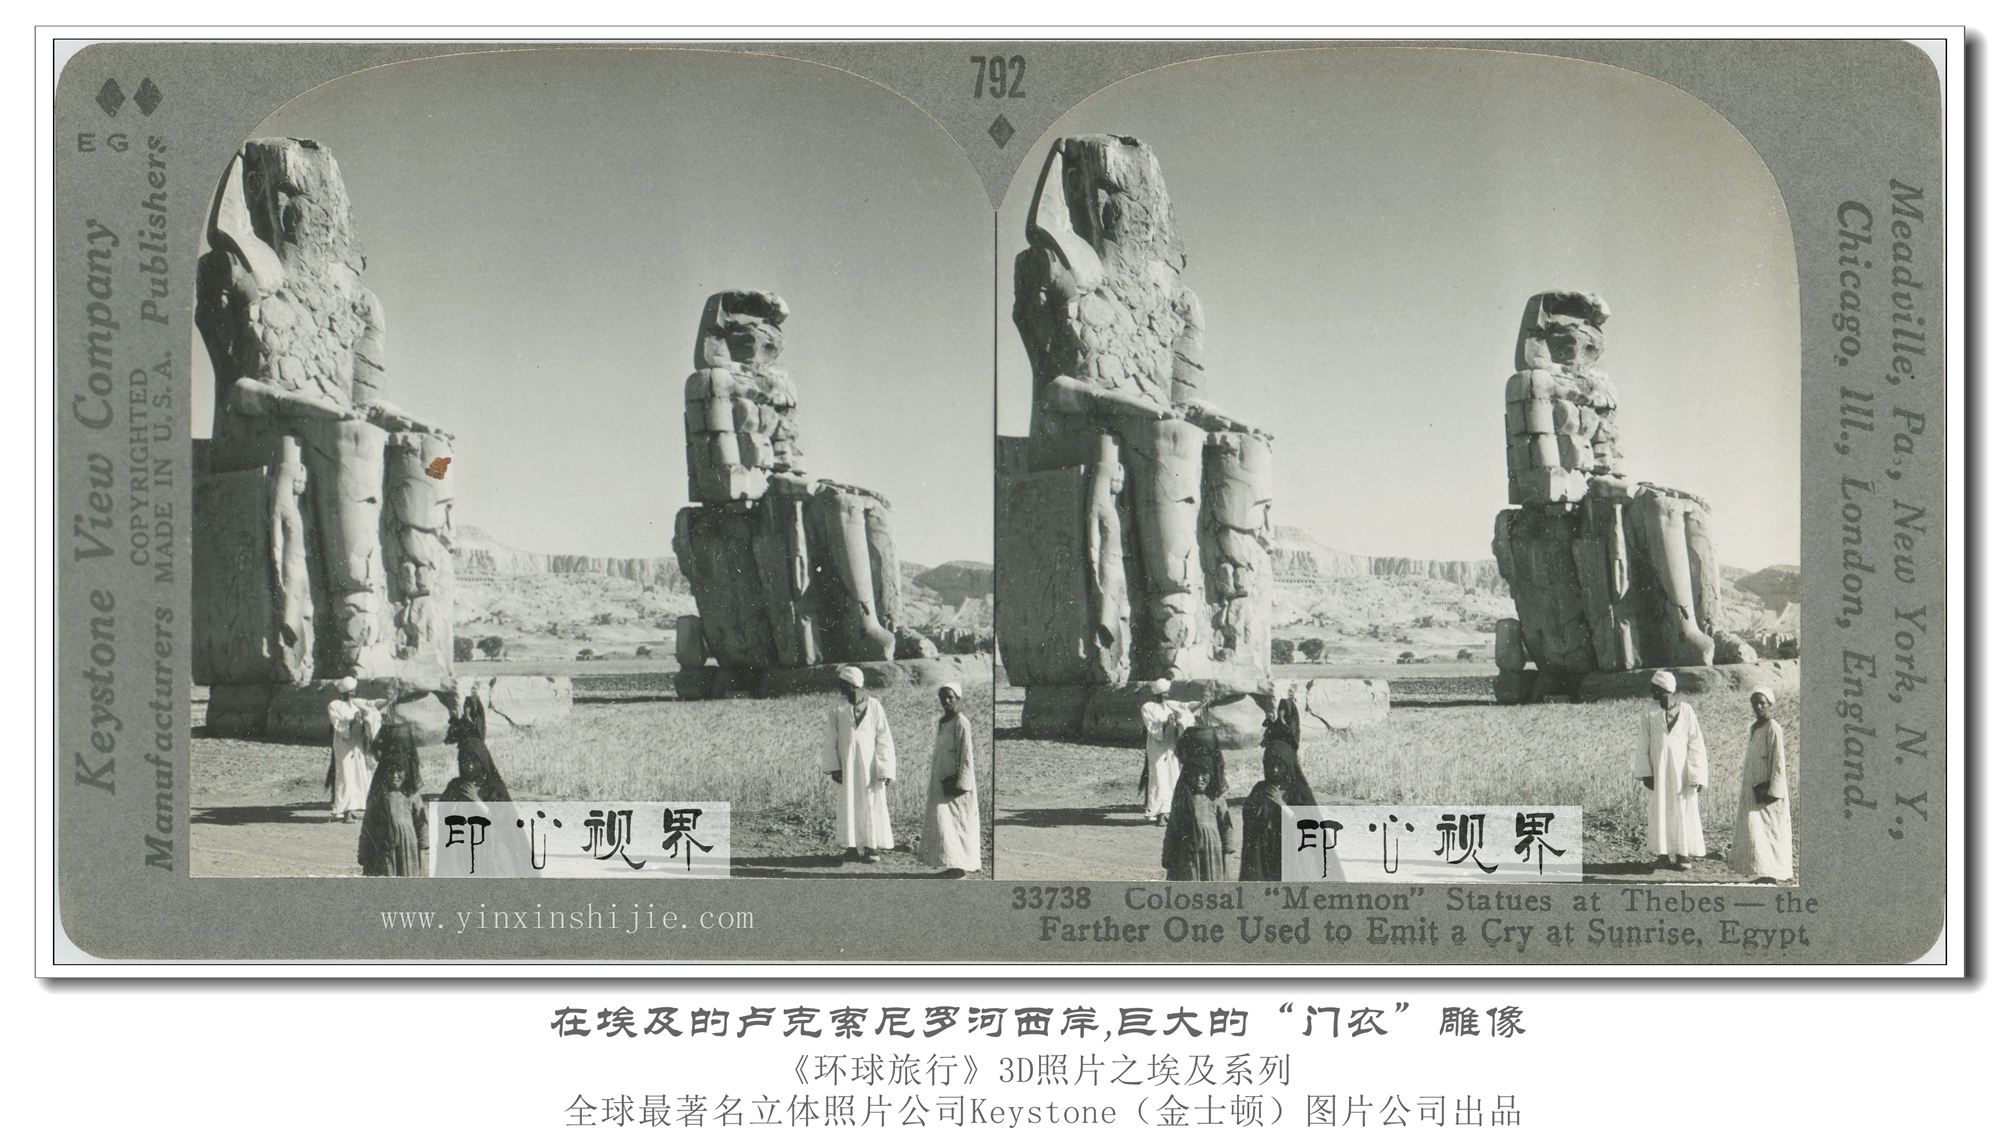 在埃及的卢克索尼罗河西岸,巨大的“门农”雕像